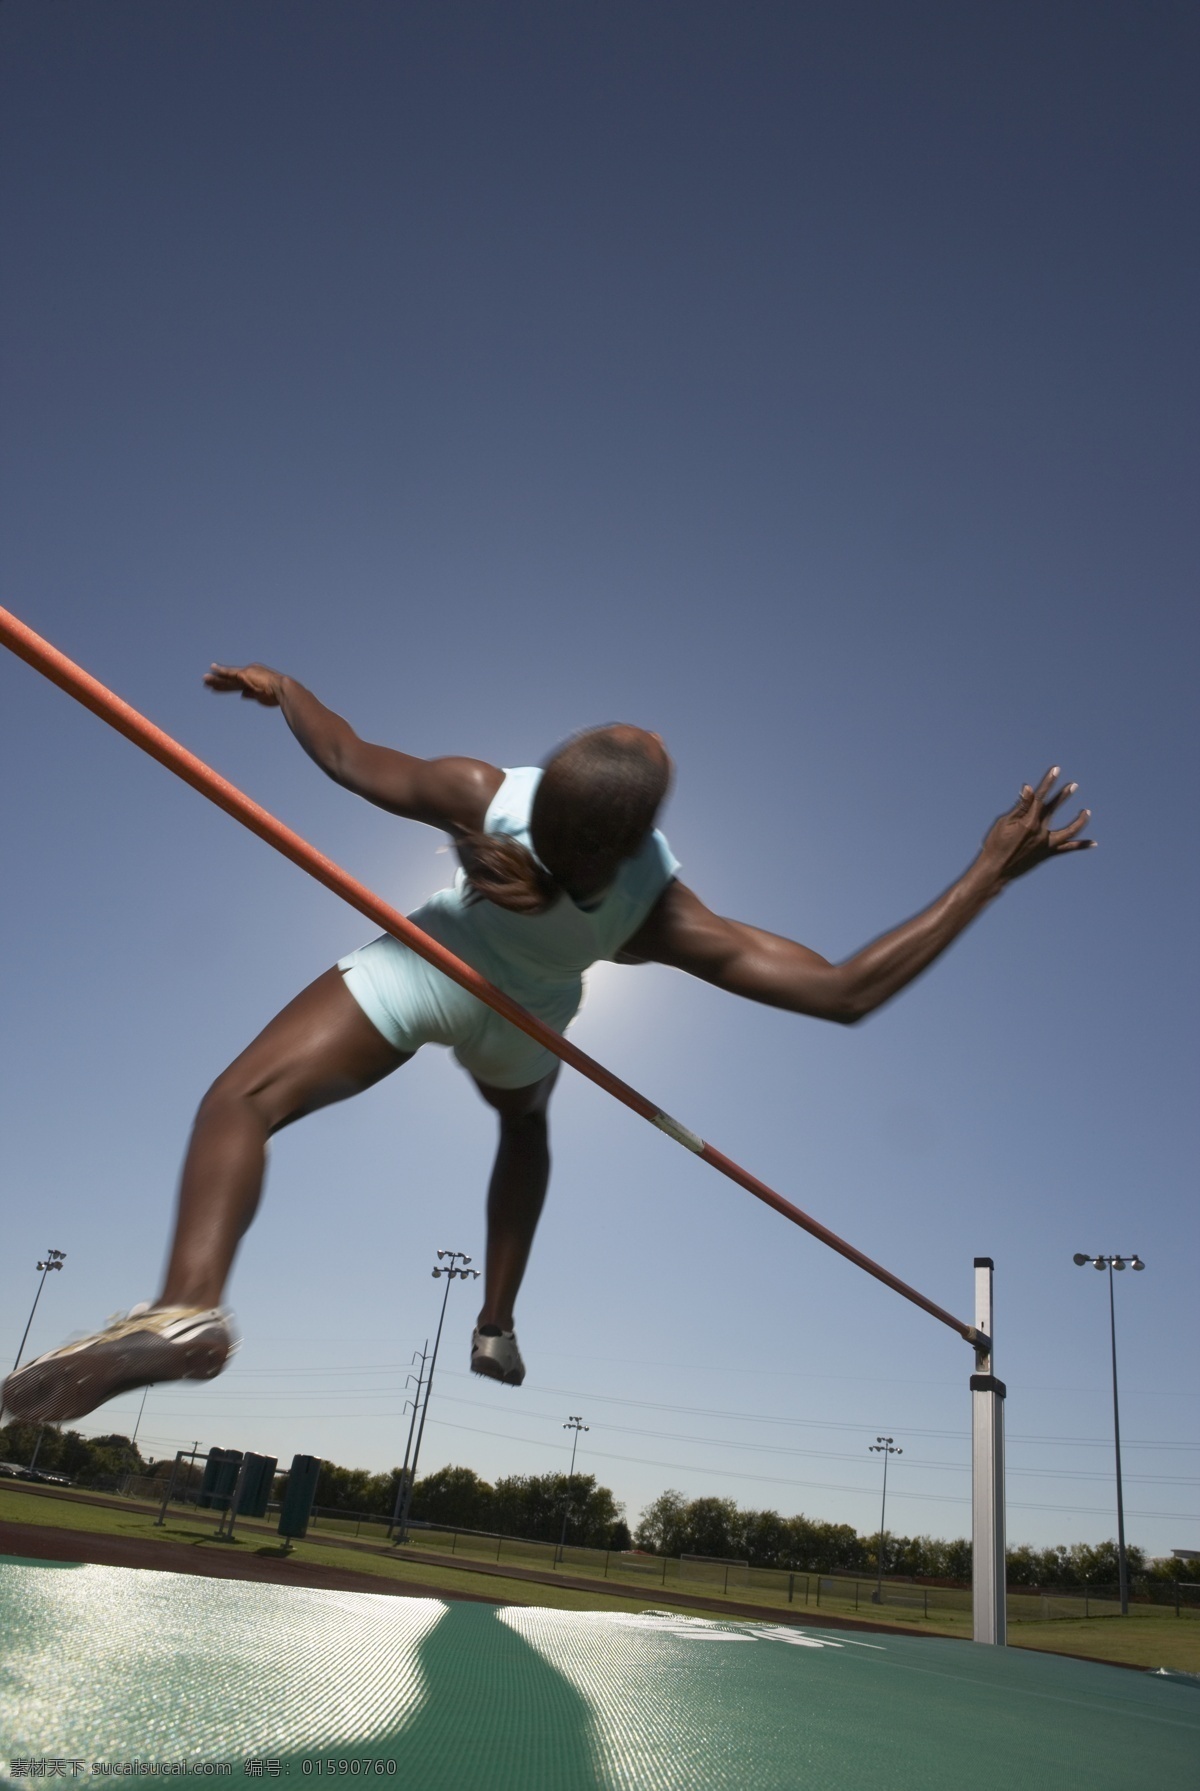 跳高 运动员 体育运动 体育项目 体育比赛 外国人 黑人 男性 背跃式 跨跃 跳高运动员 摄影图 高清图片 生活百科